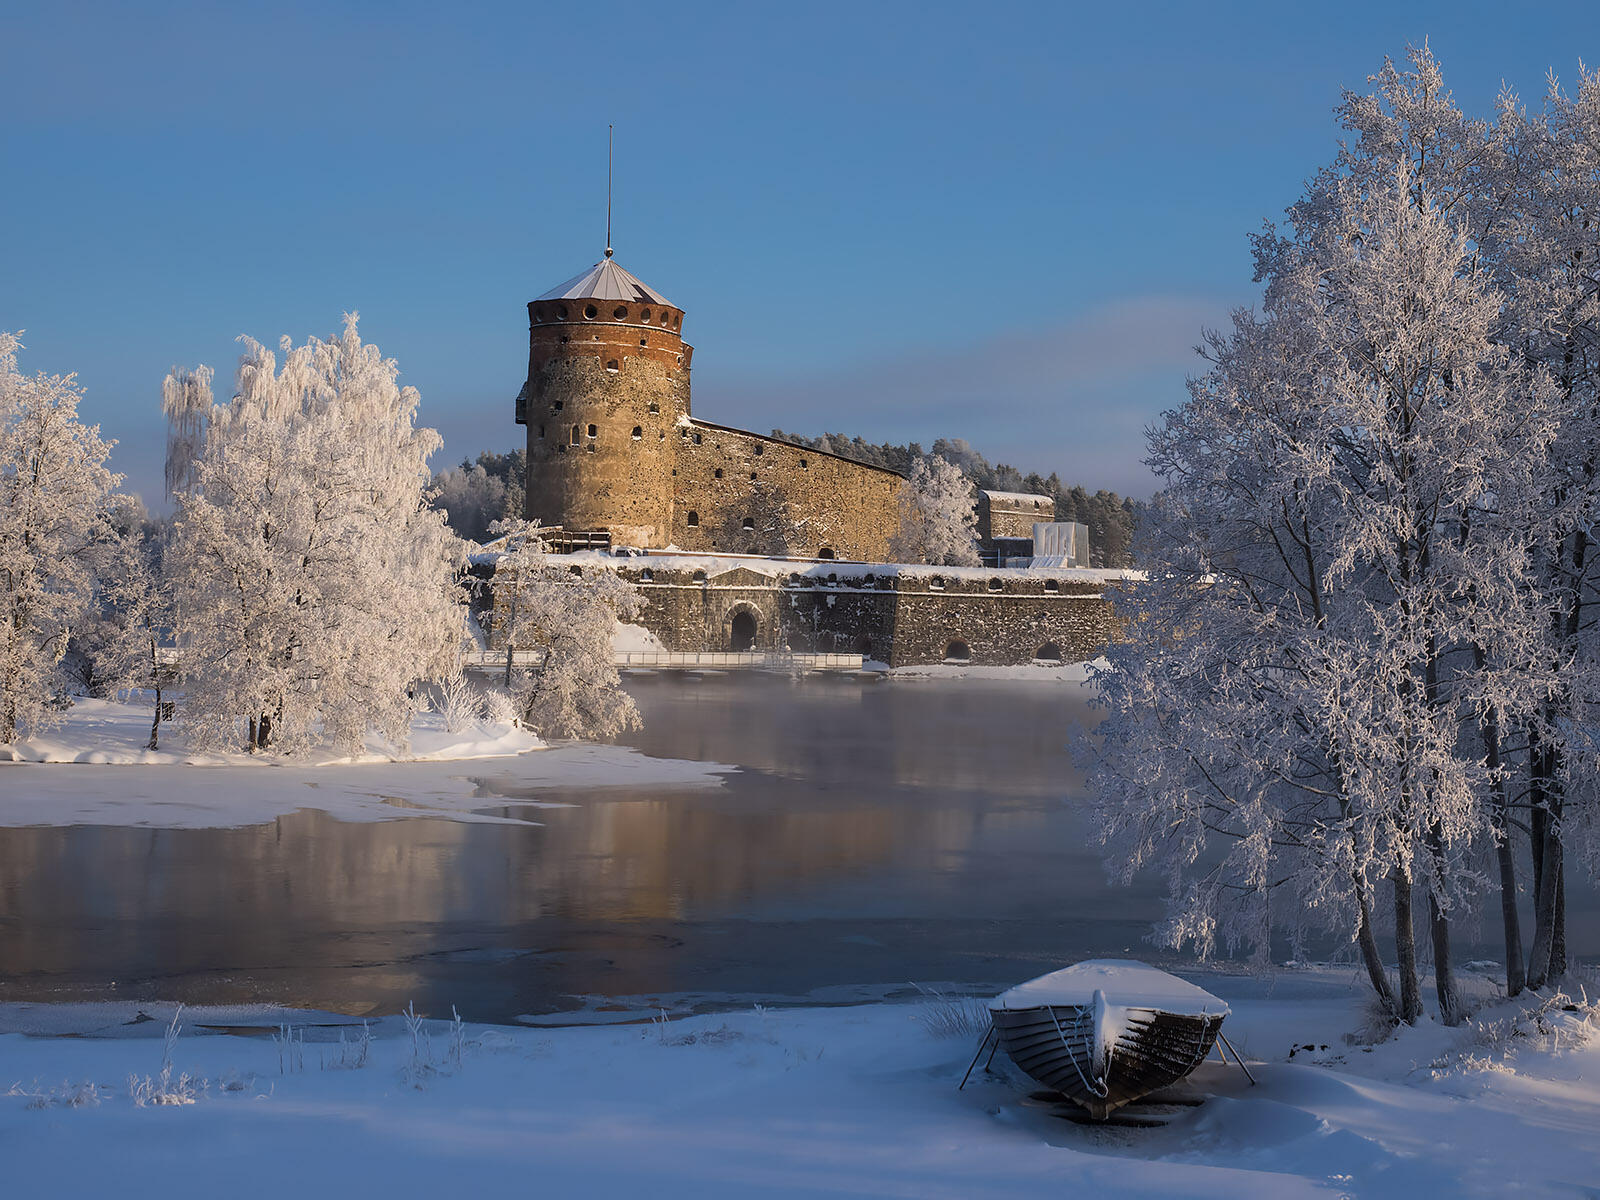 Wallpapers Olavinlinna Castle landscape winter on the desktop